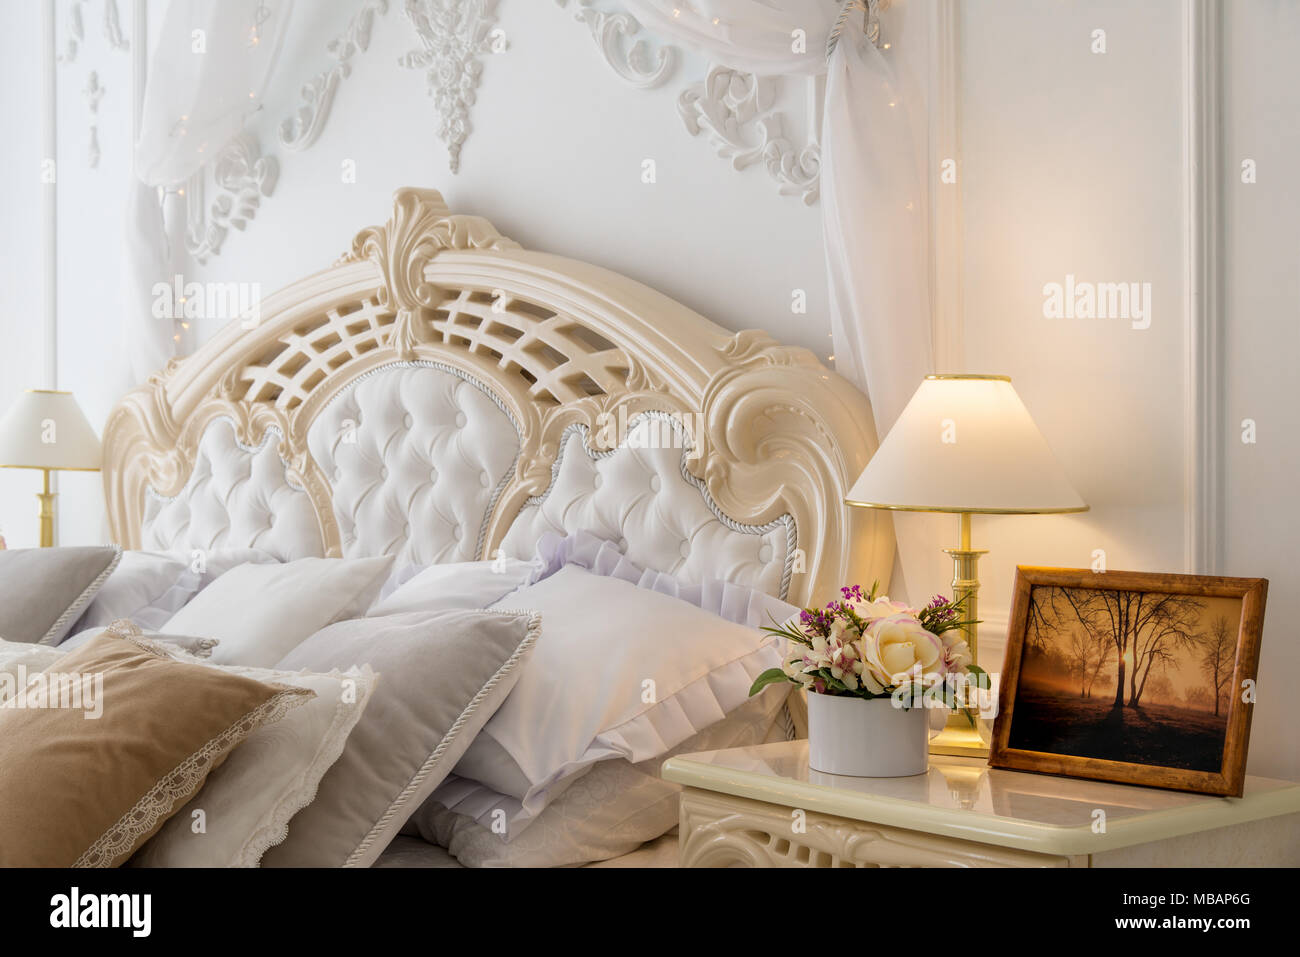 Komfortable Zimmer im klassischen Schlafzimmer mit Lampe und Bild auf dem Nachttisch Stockfoto